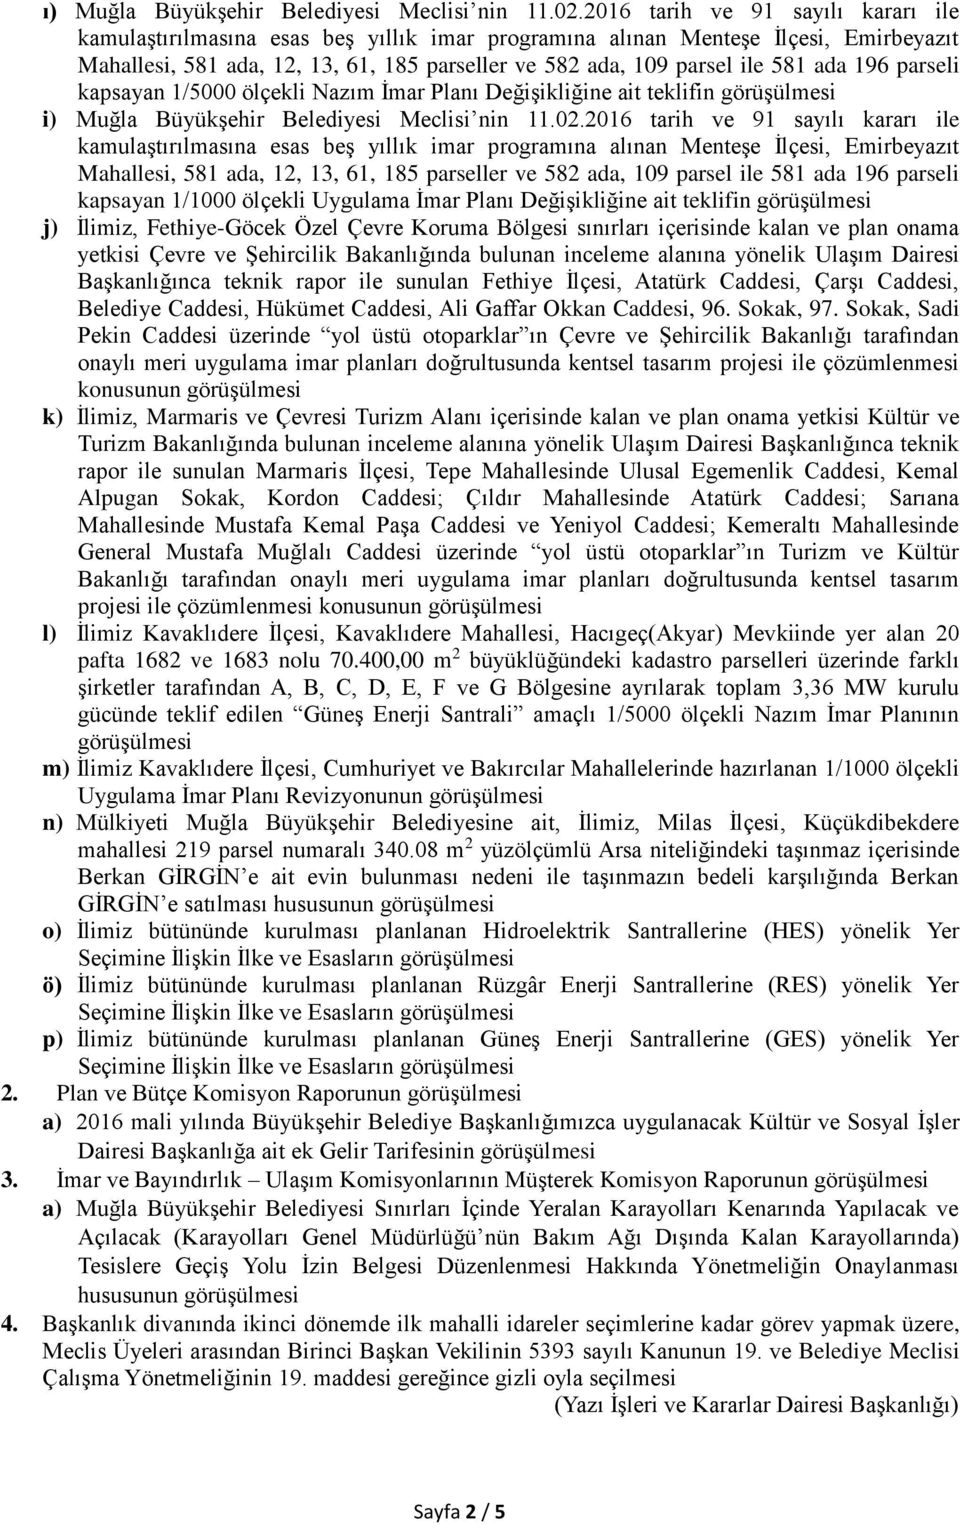 ada 196 parseli kapsayan 1/5000 ölçekli Nazım İmar Planı Değişikliğine ait teklifin i) Muğla Büyükşehir Belediyesi Meclisi nin 11.02.